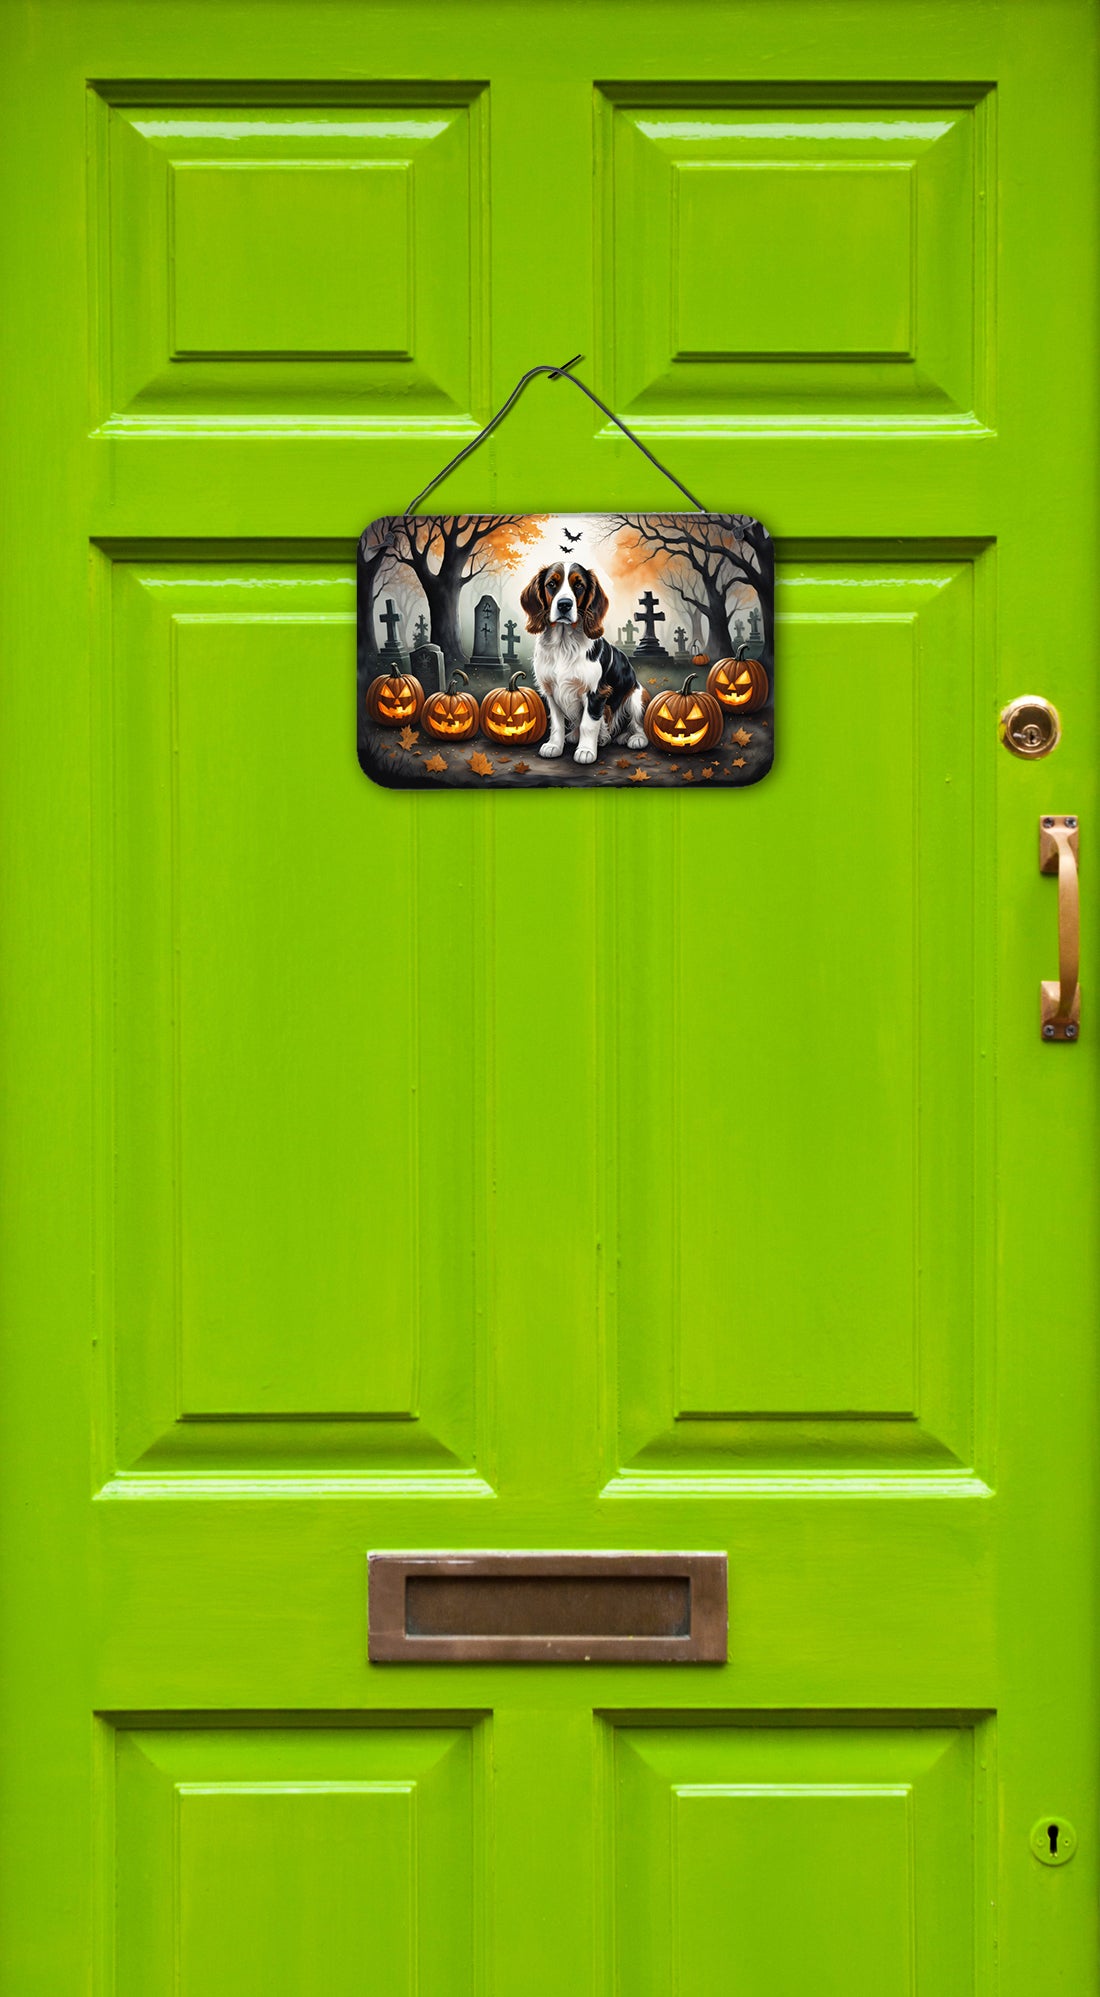 Welsh Springer Spaniel Spooky Halloween Wall or Door Hanging Prints